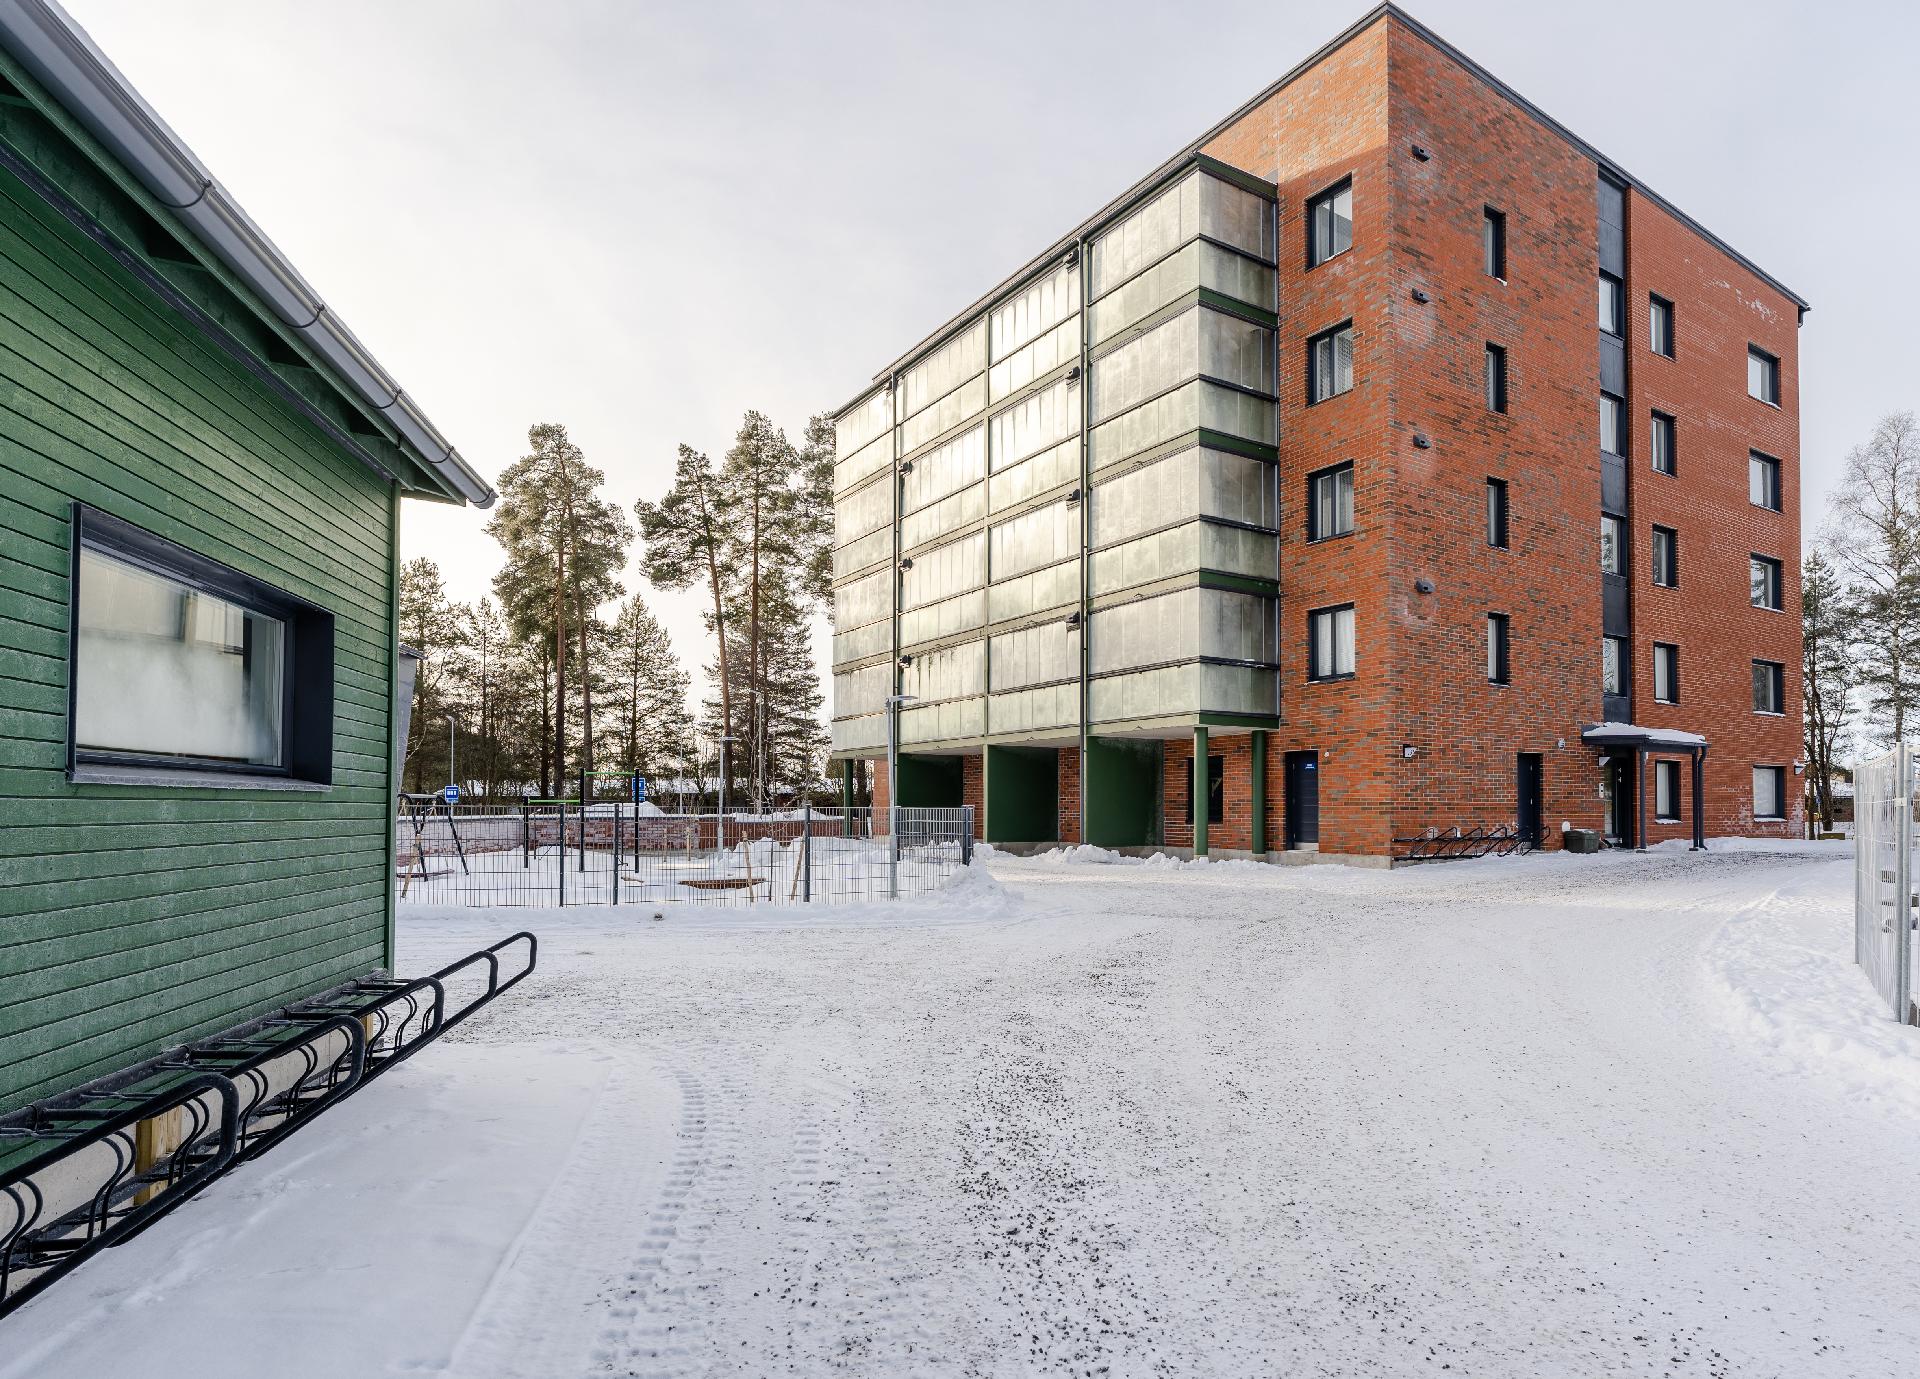 Postipojankuja 3, Mäntylä, Oulu